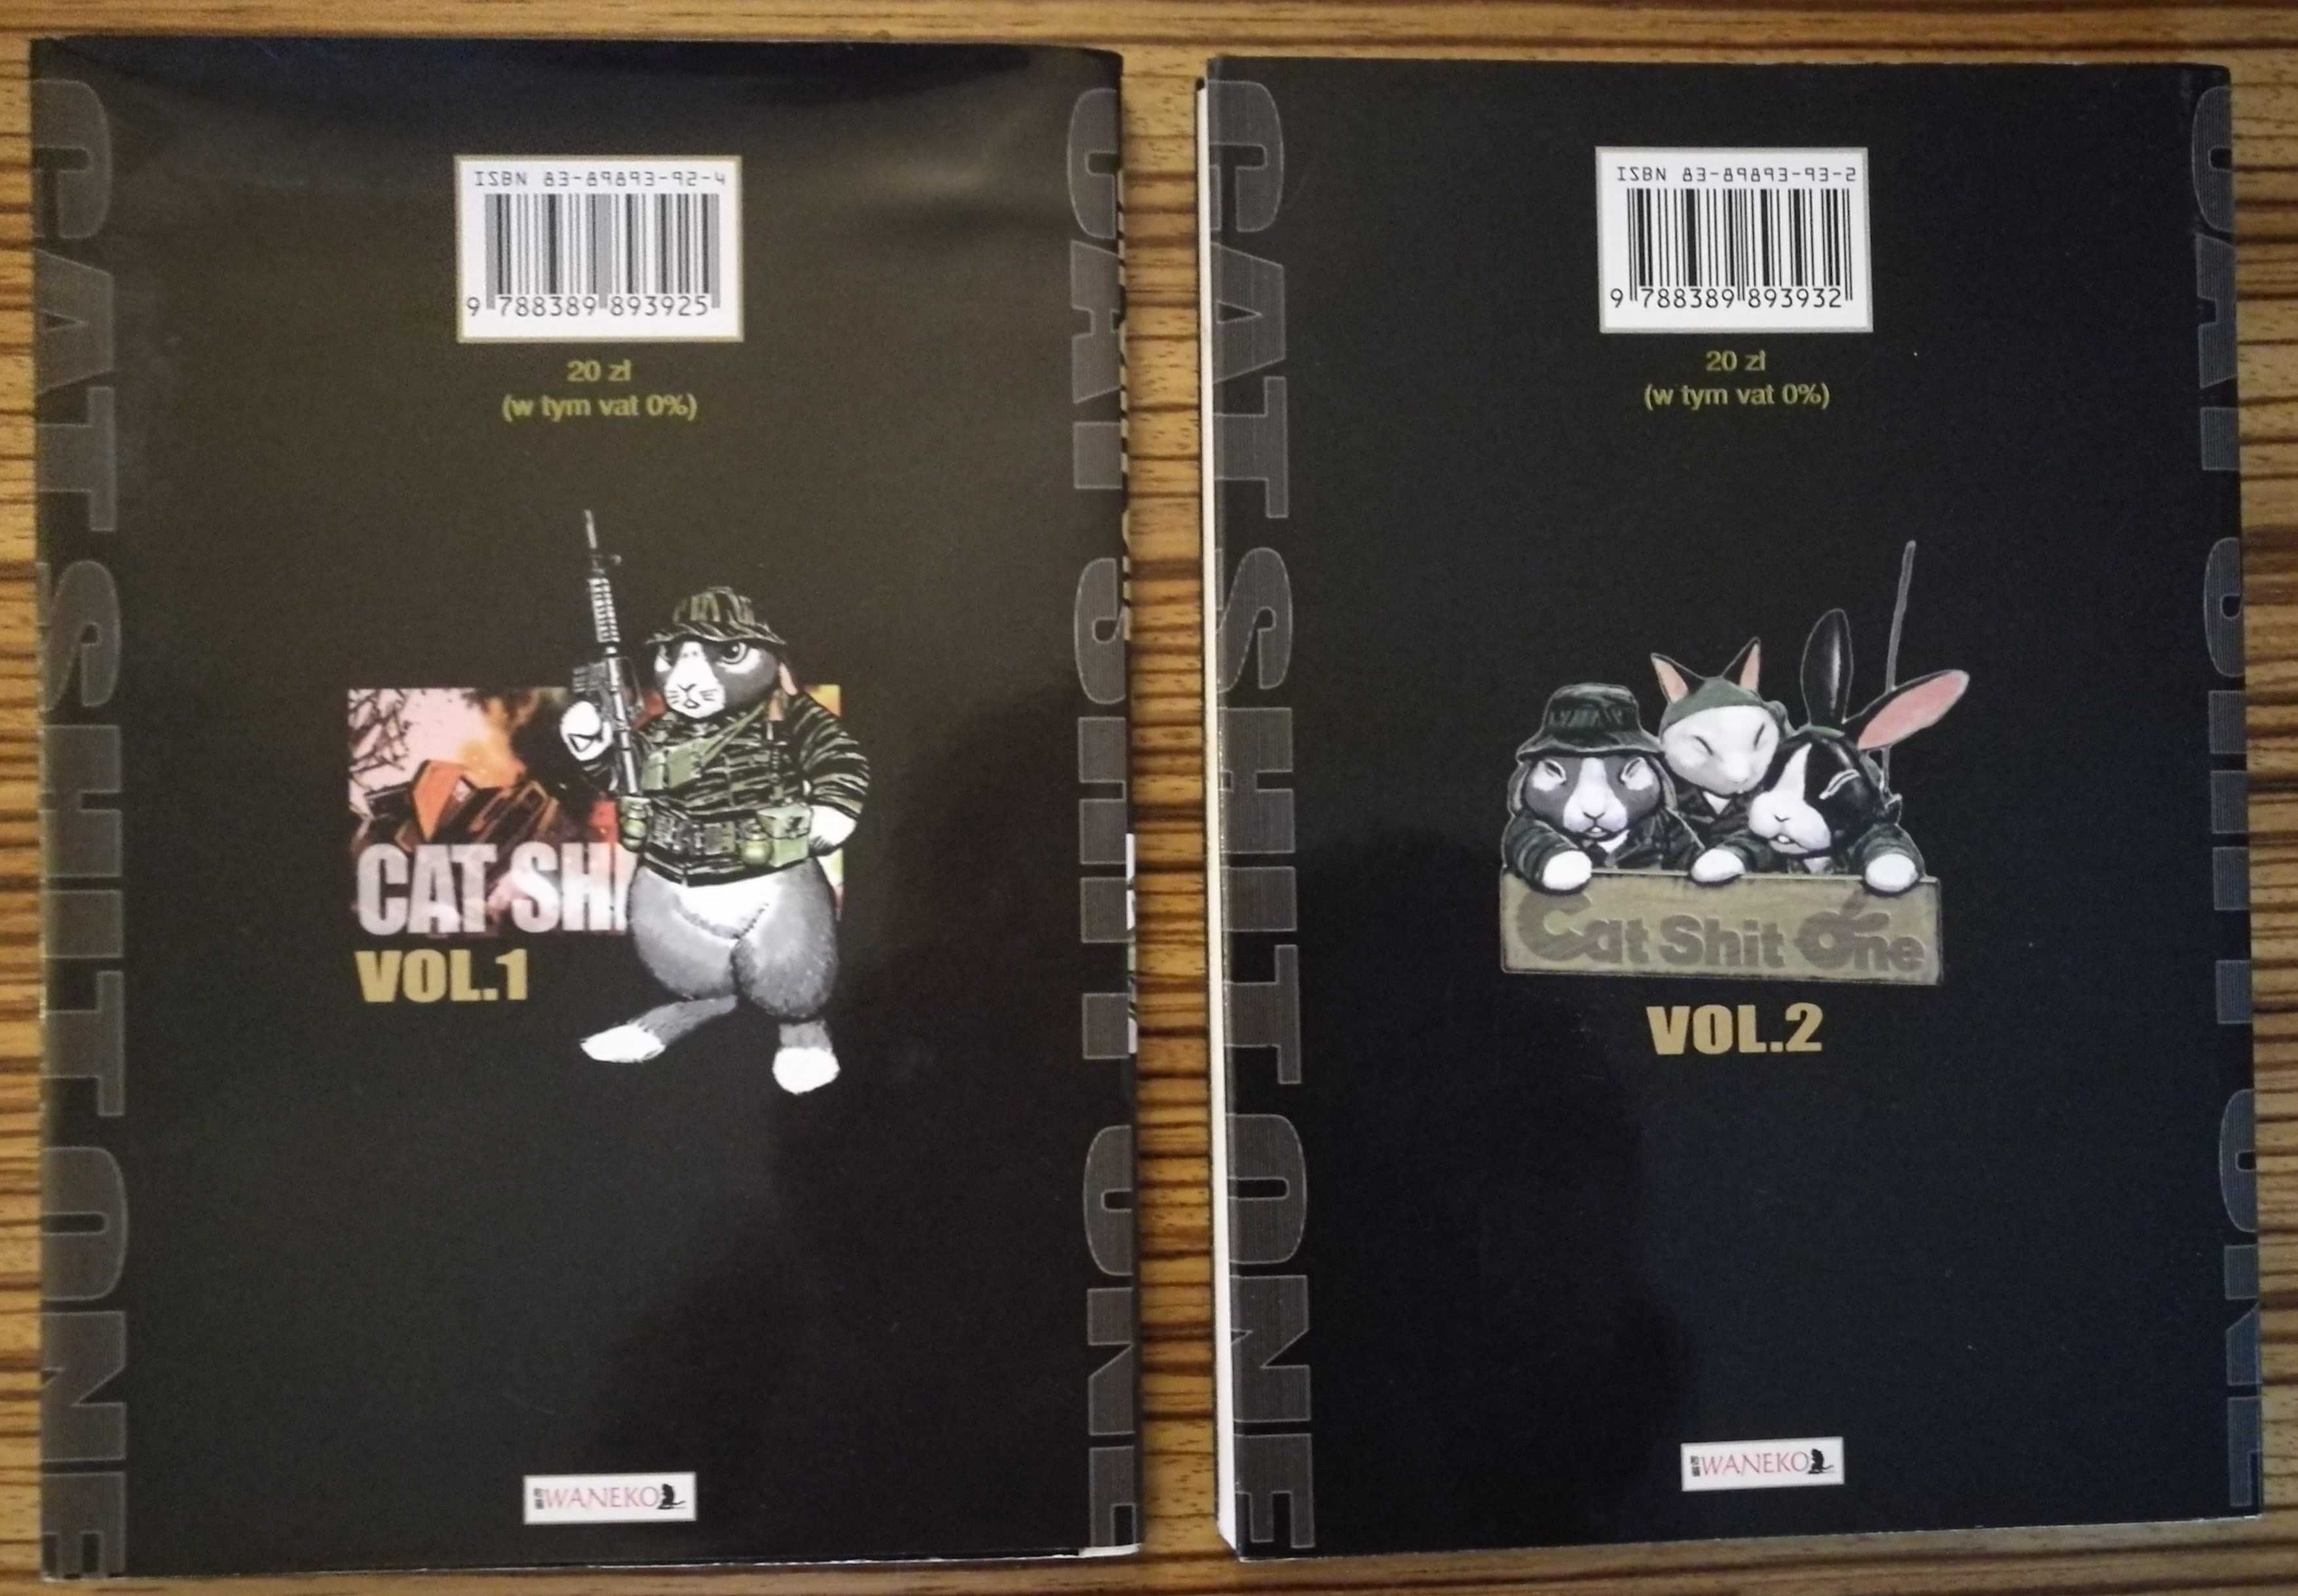 Cat Shit One vol.1 i vol.2  manga Kobayashi stan bdb cena za komplet